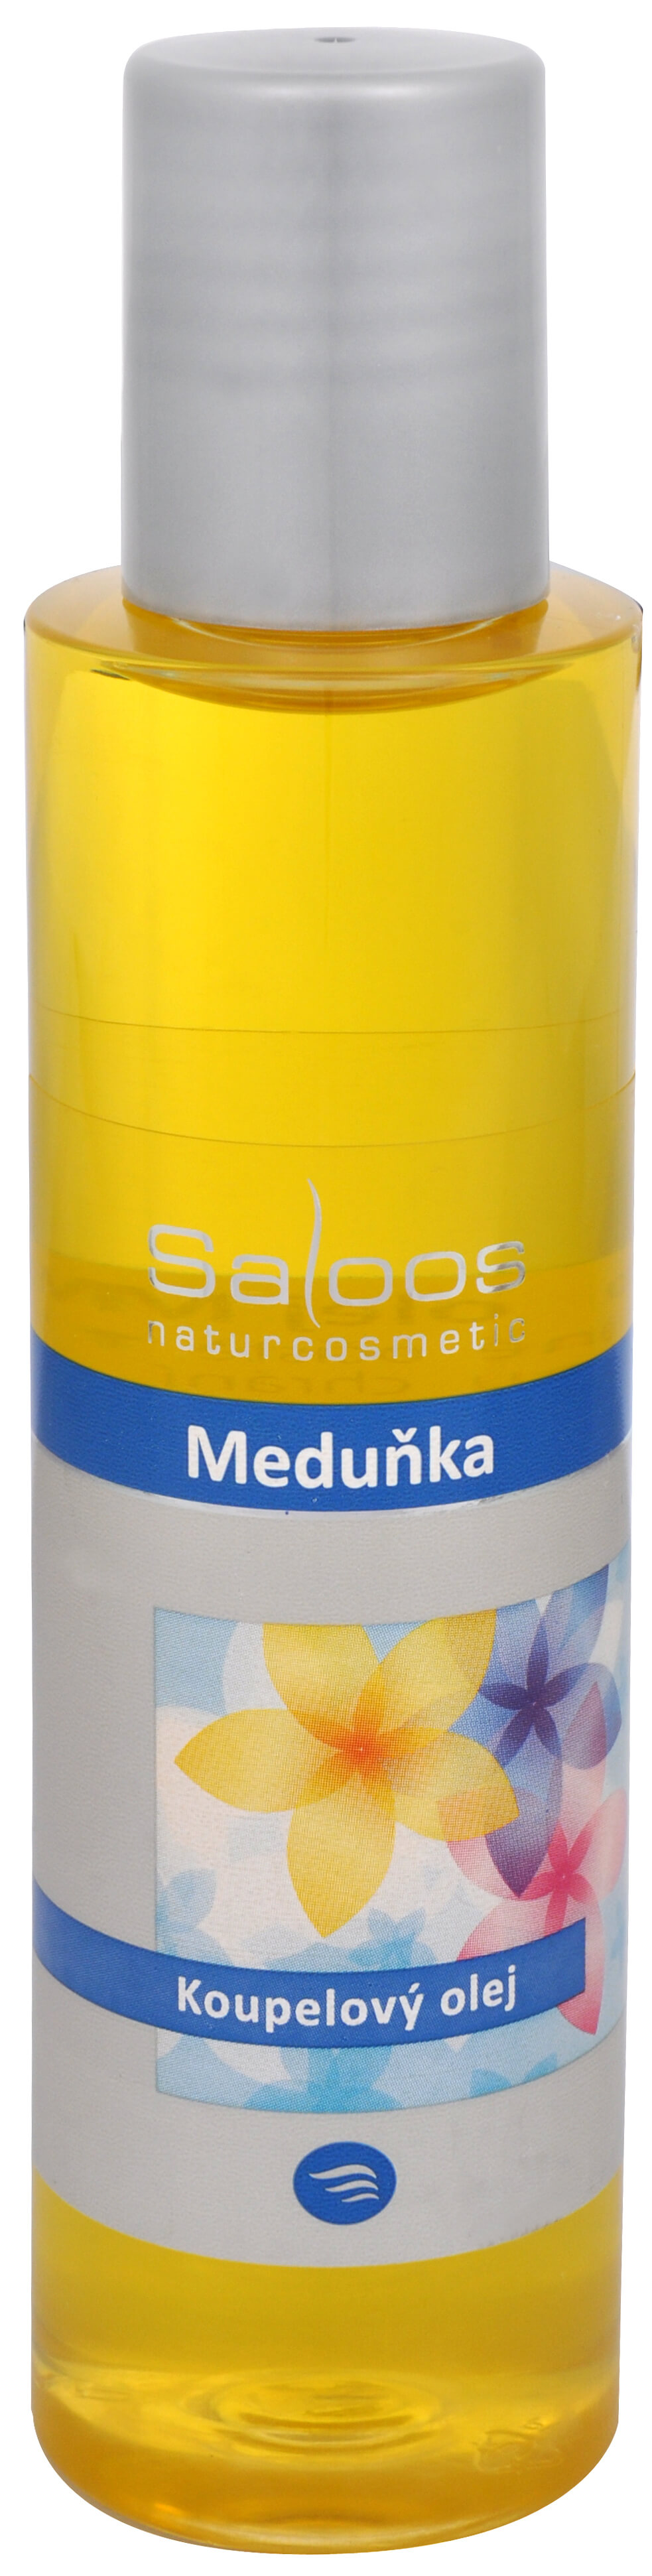 Zobrazit detail výrobku Saloos Koupelový olej - Meduňka 250 ml